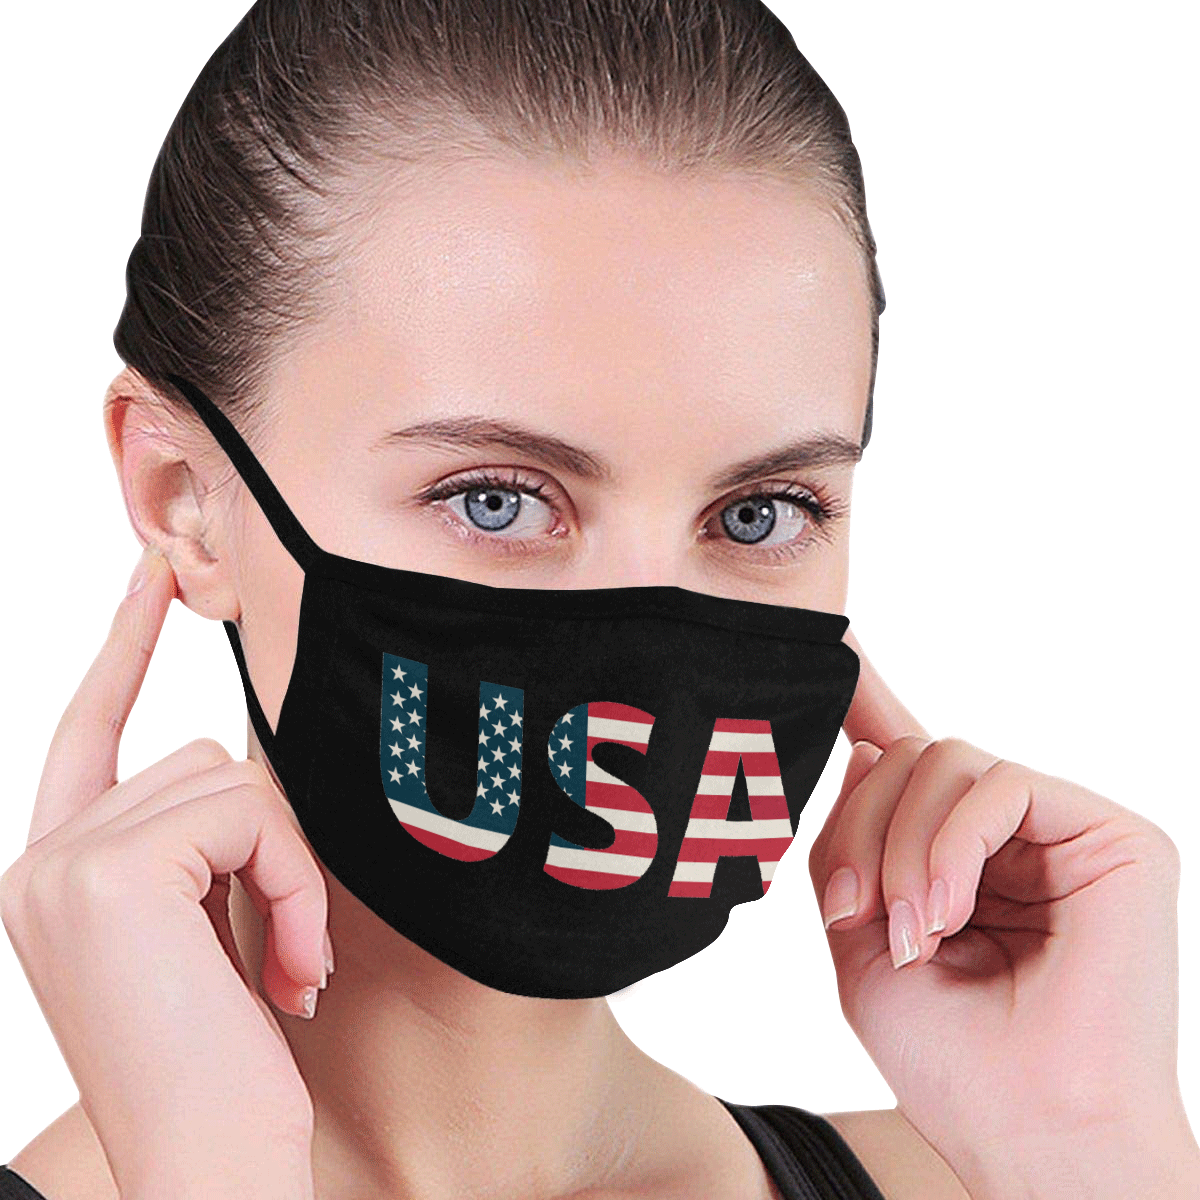 USA Mouth Mask